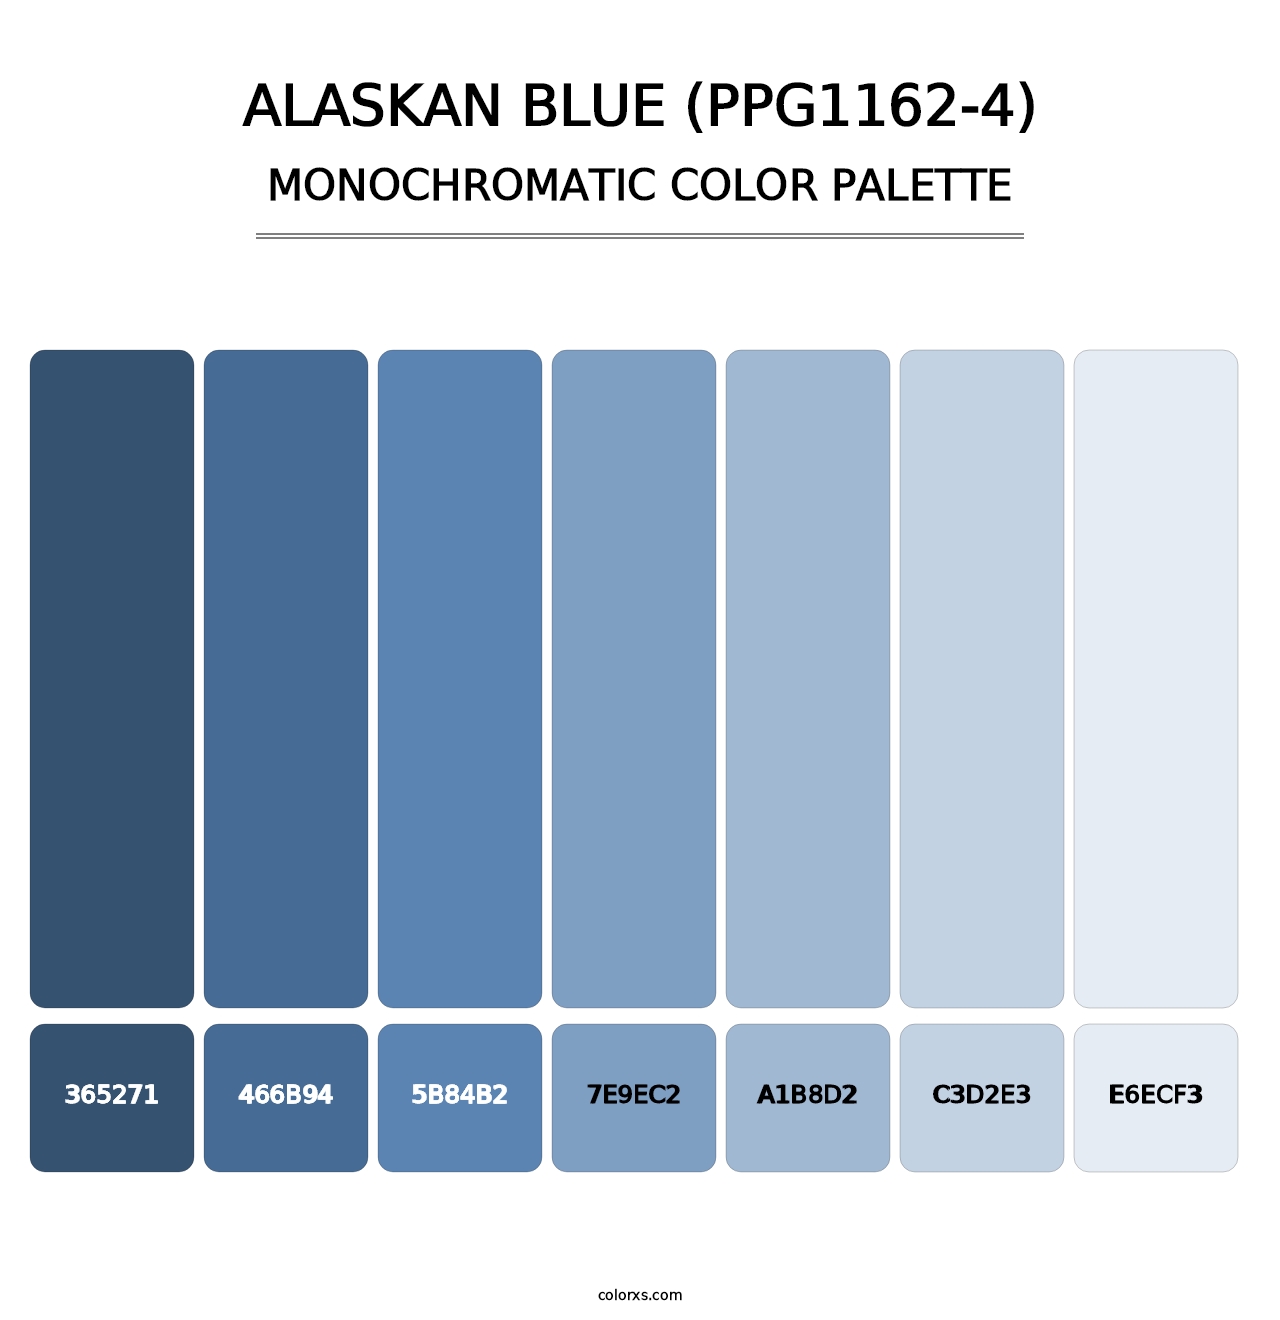 Alaskan Blue (PPG1162-4) - Monochromatic Color Palette